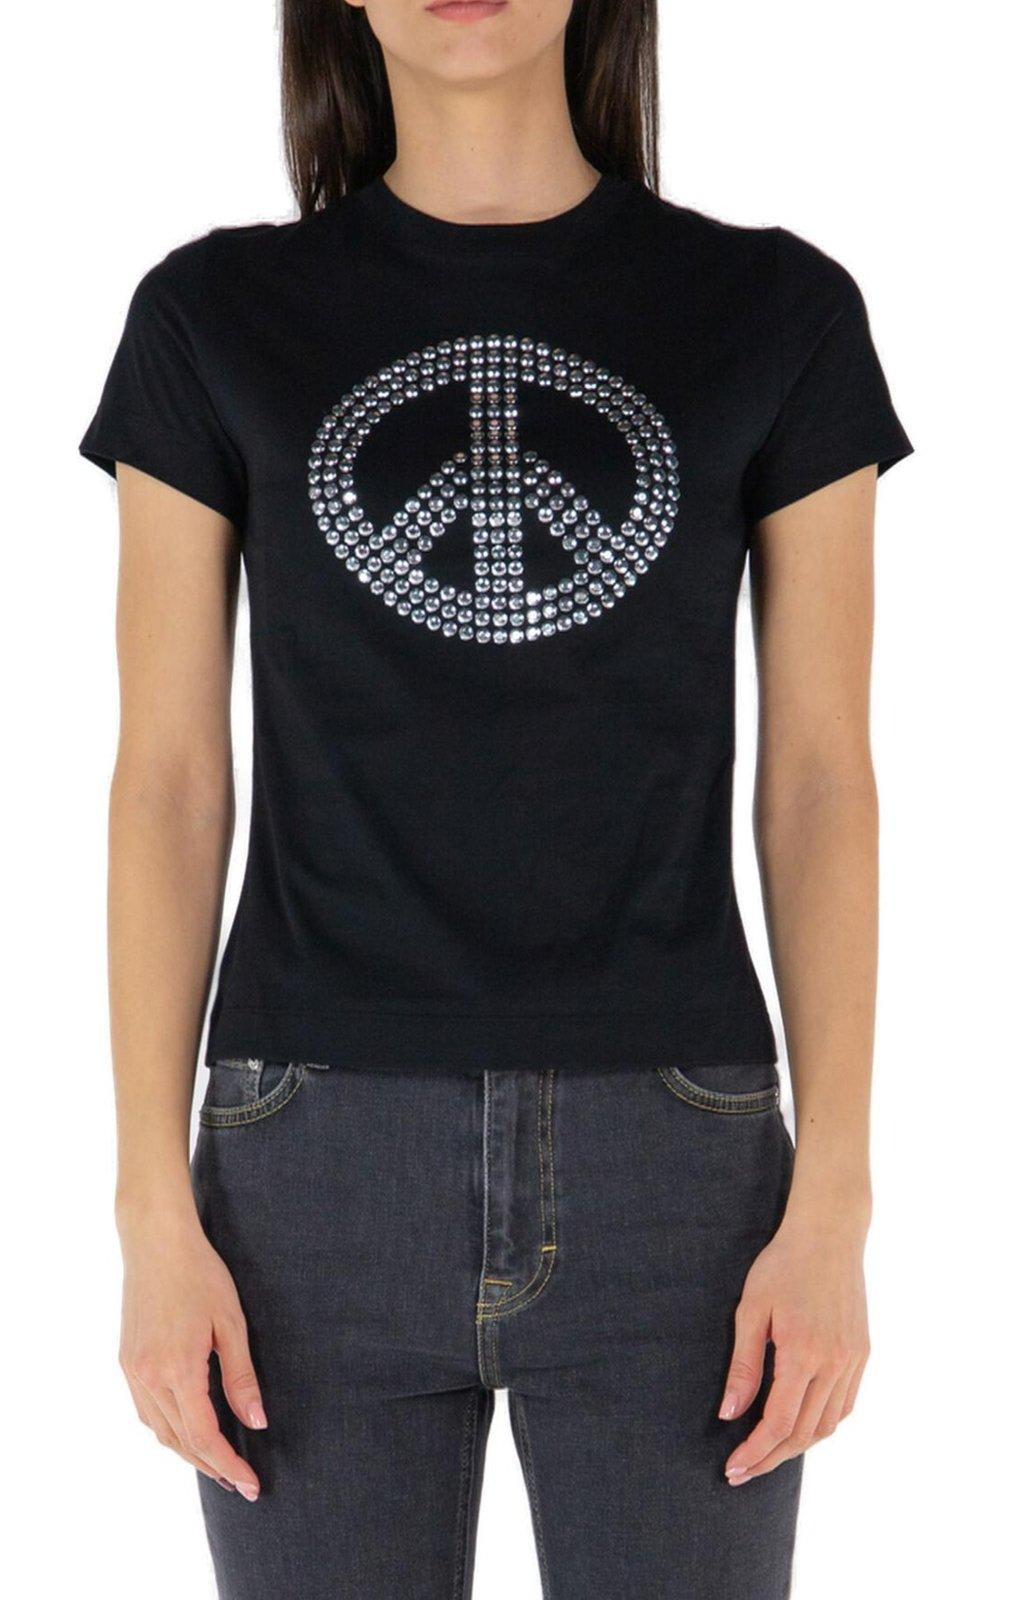 Shop M05ch1n0 Jeans Jeans Peace Sign-motif Crewneck T-shirt In Black